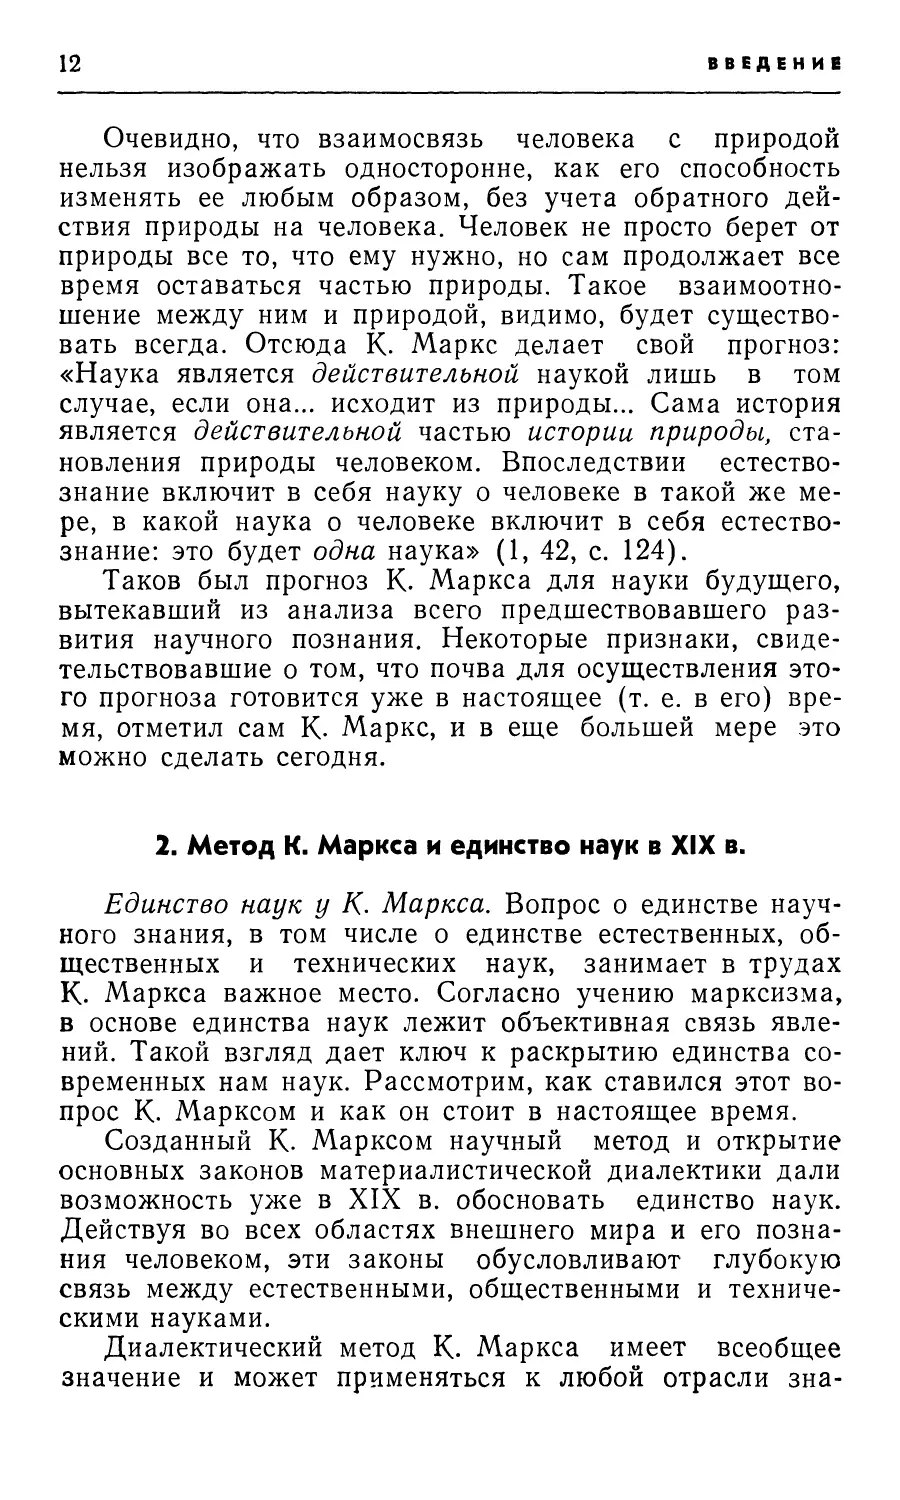 2. Метод К. Маркса и единство наук в XIX в.